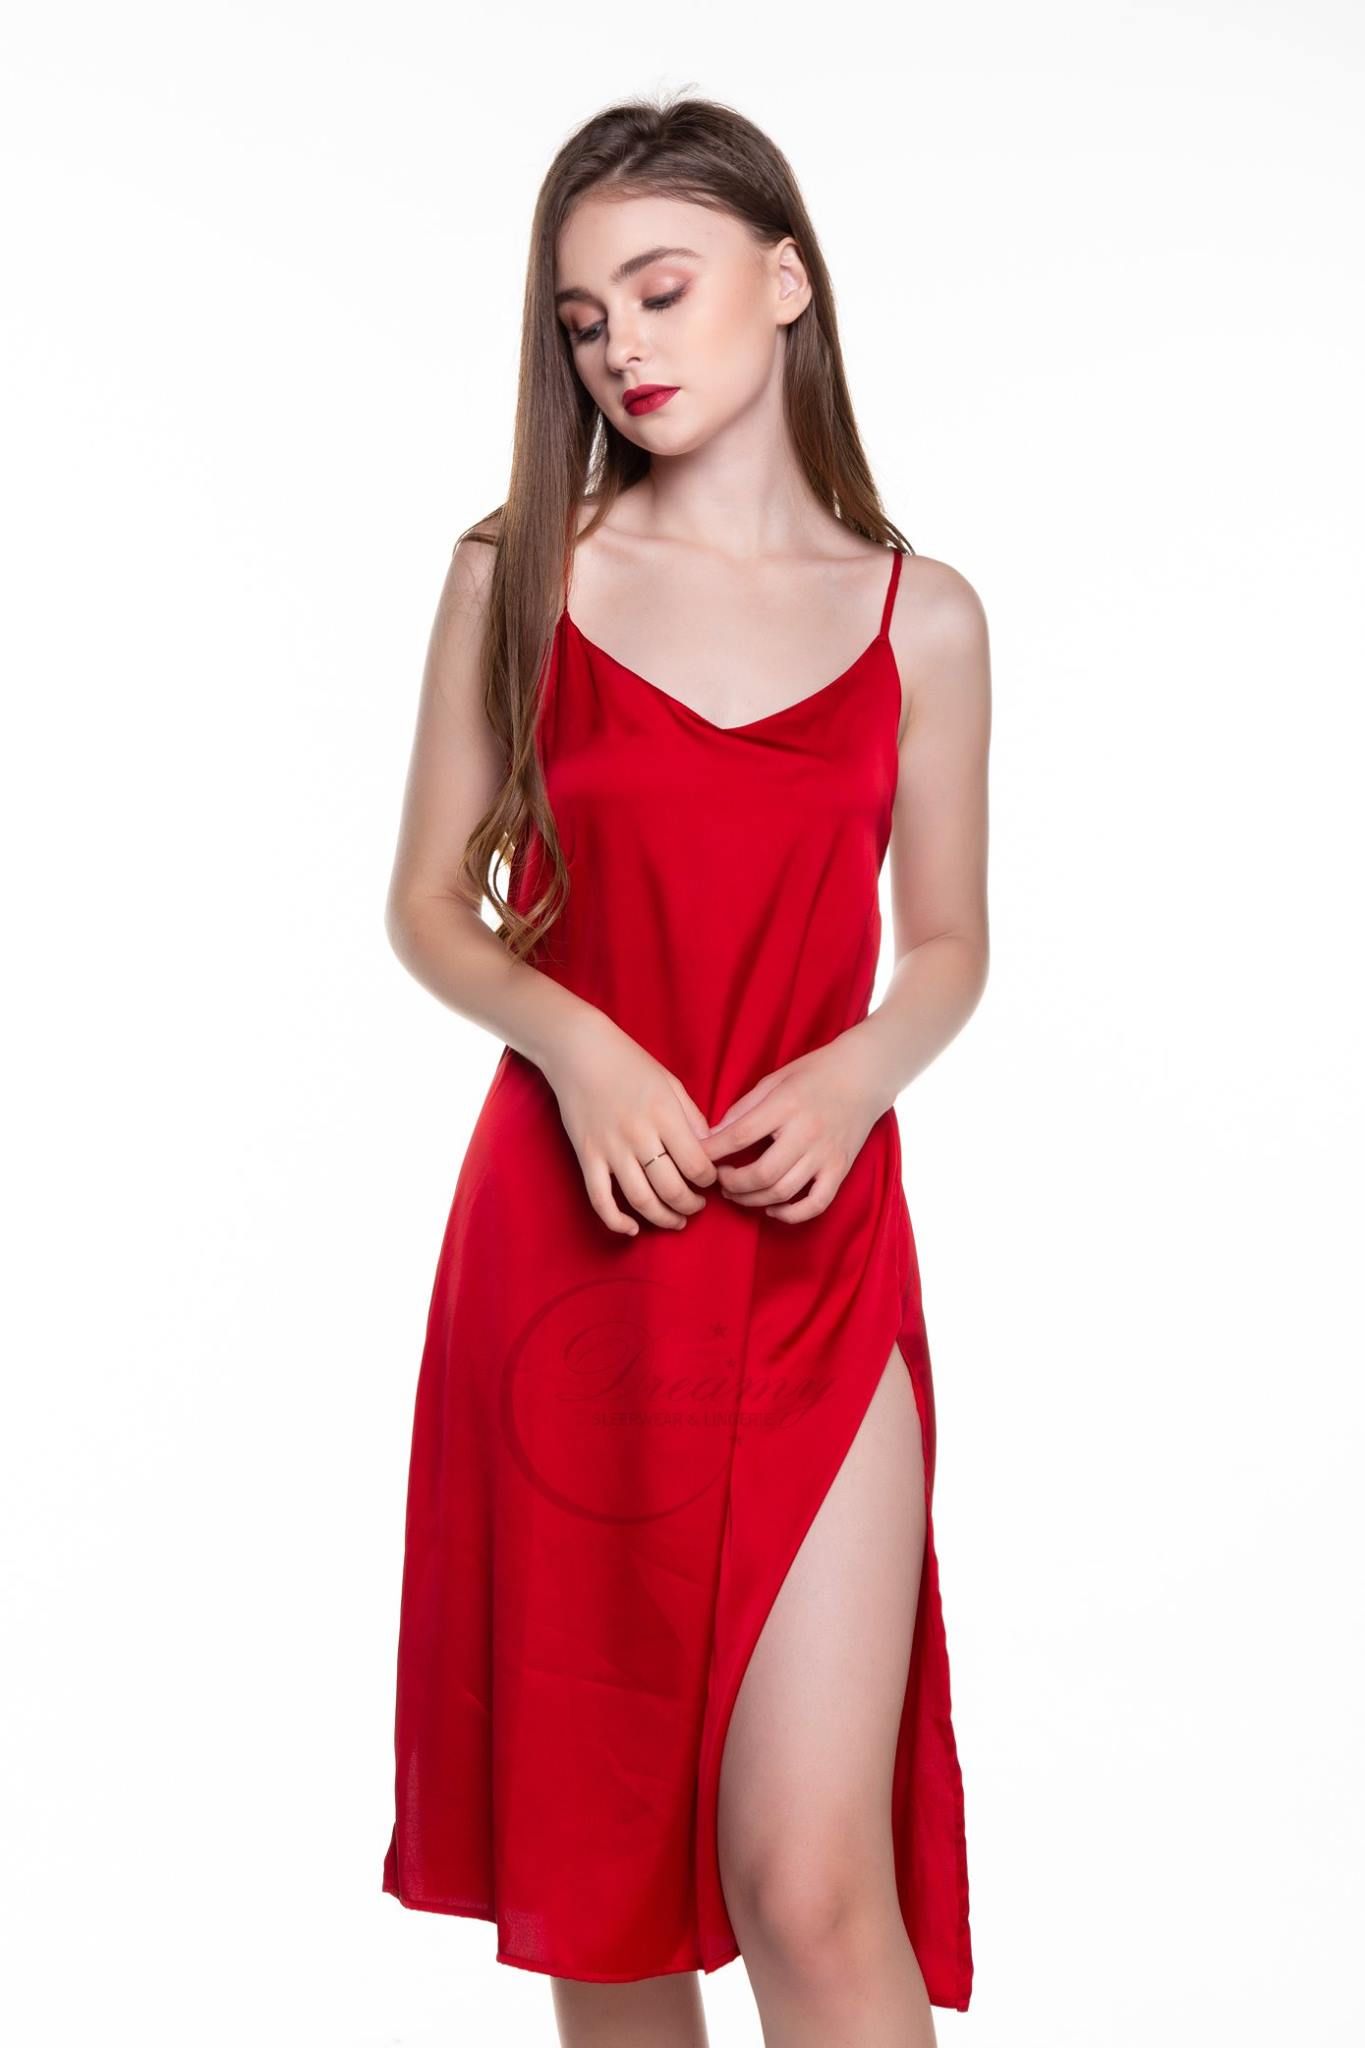 Đầm ngủ đẹp 2 dây Váy ngủ lụa đồ ngủ đẹp phòng the gợi cảm màu đỏ hồng đen   Shop 3 Miền  website mua bán sản phẩm tốt giá rẻ toàn quốc